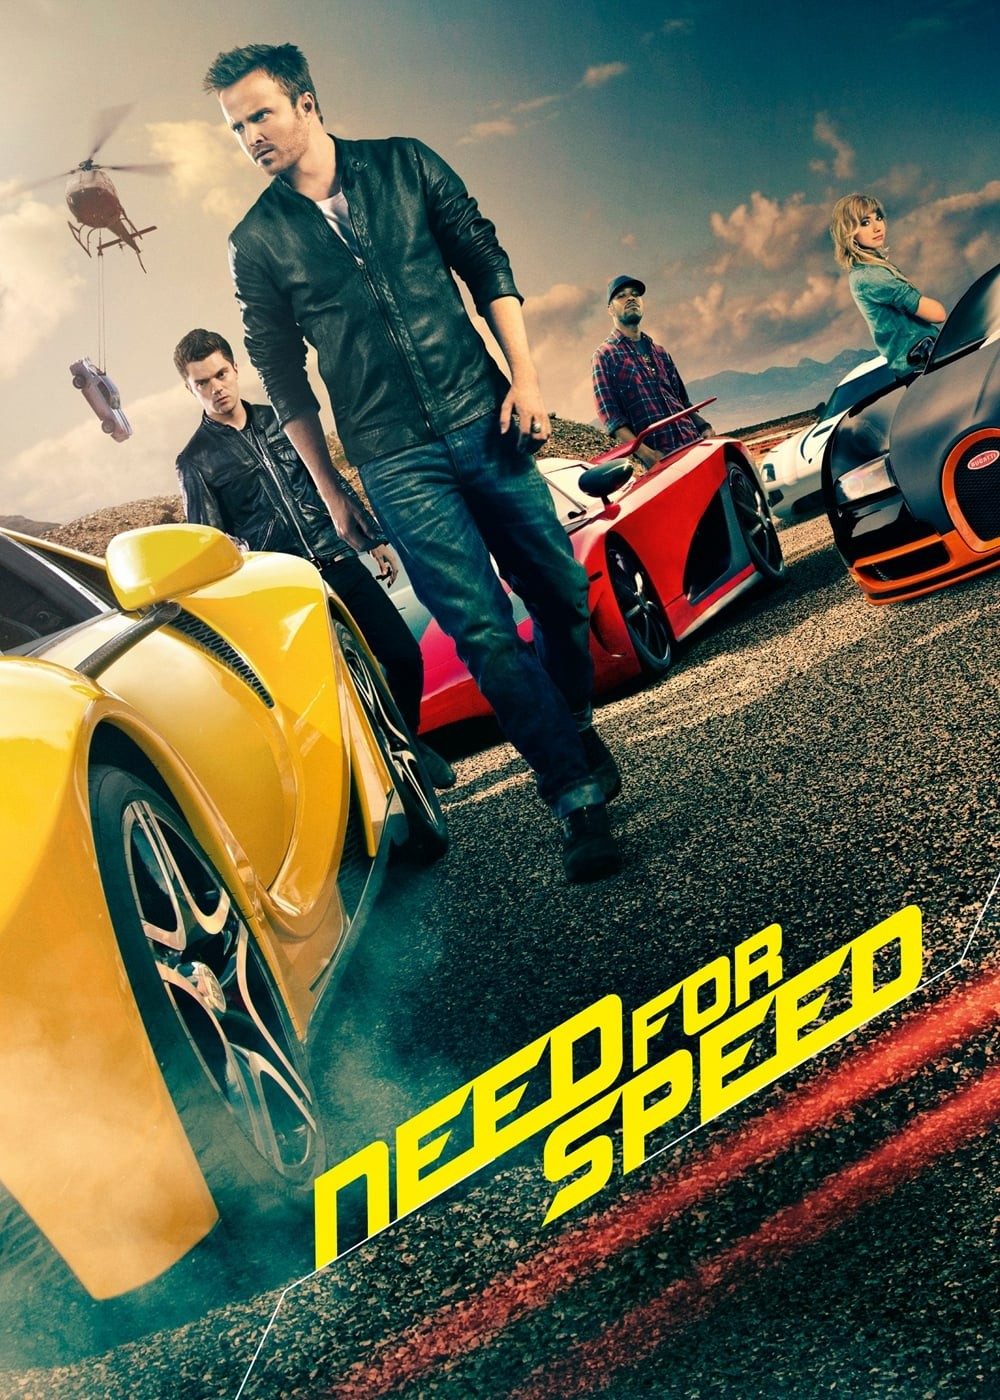 Đam Mê Tốc Độ - Need for Speed (2014)